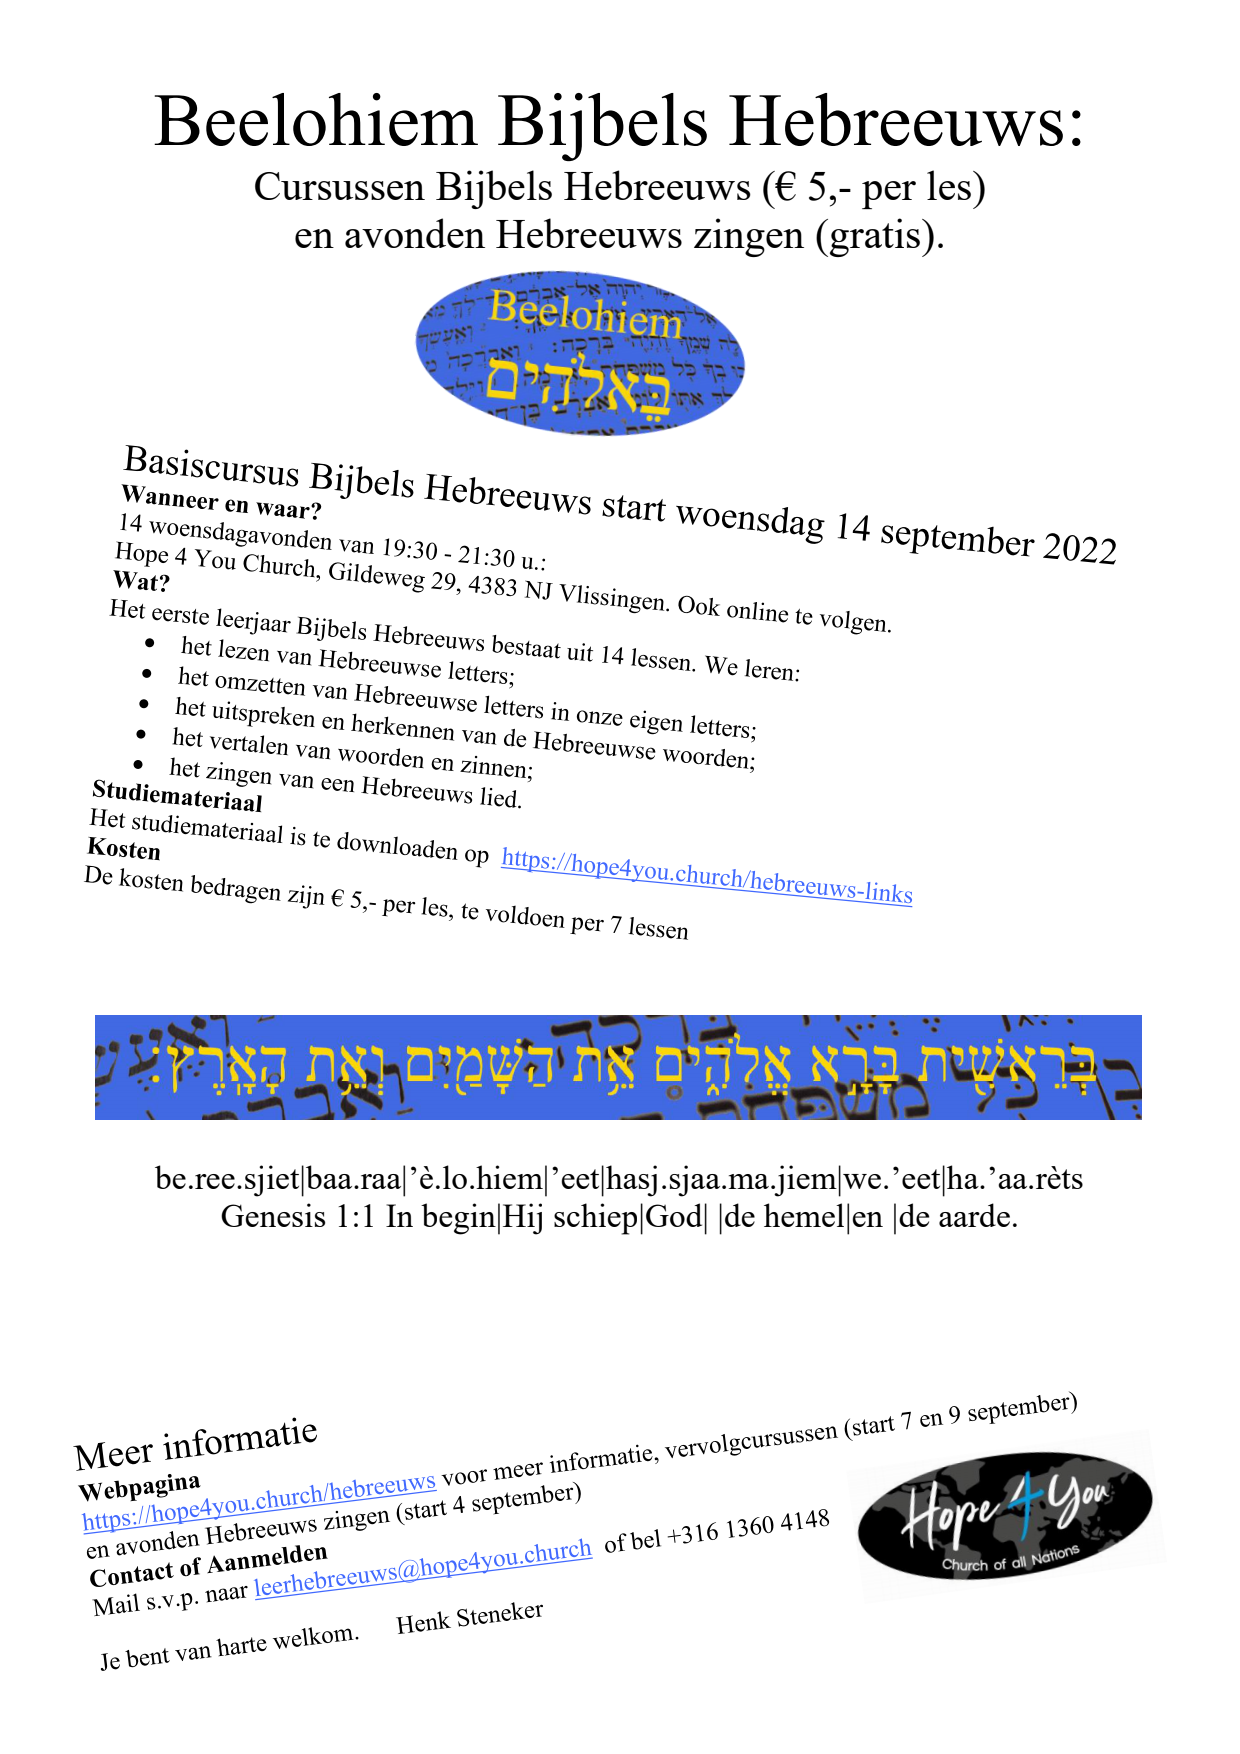 BEELOHIEM - Basiscursus Bijbels Hebreeuws (vergaderruimte)